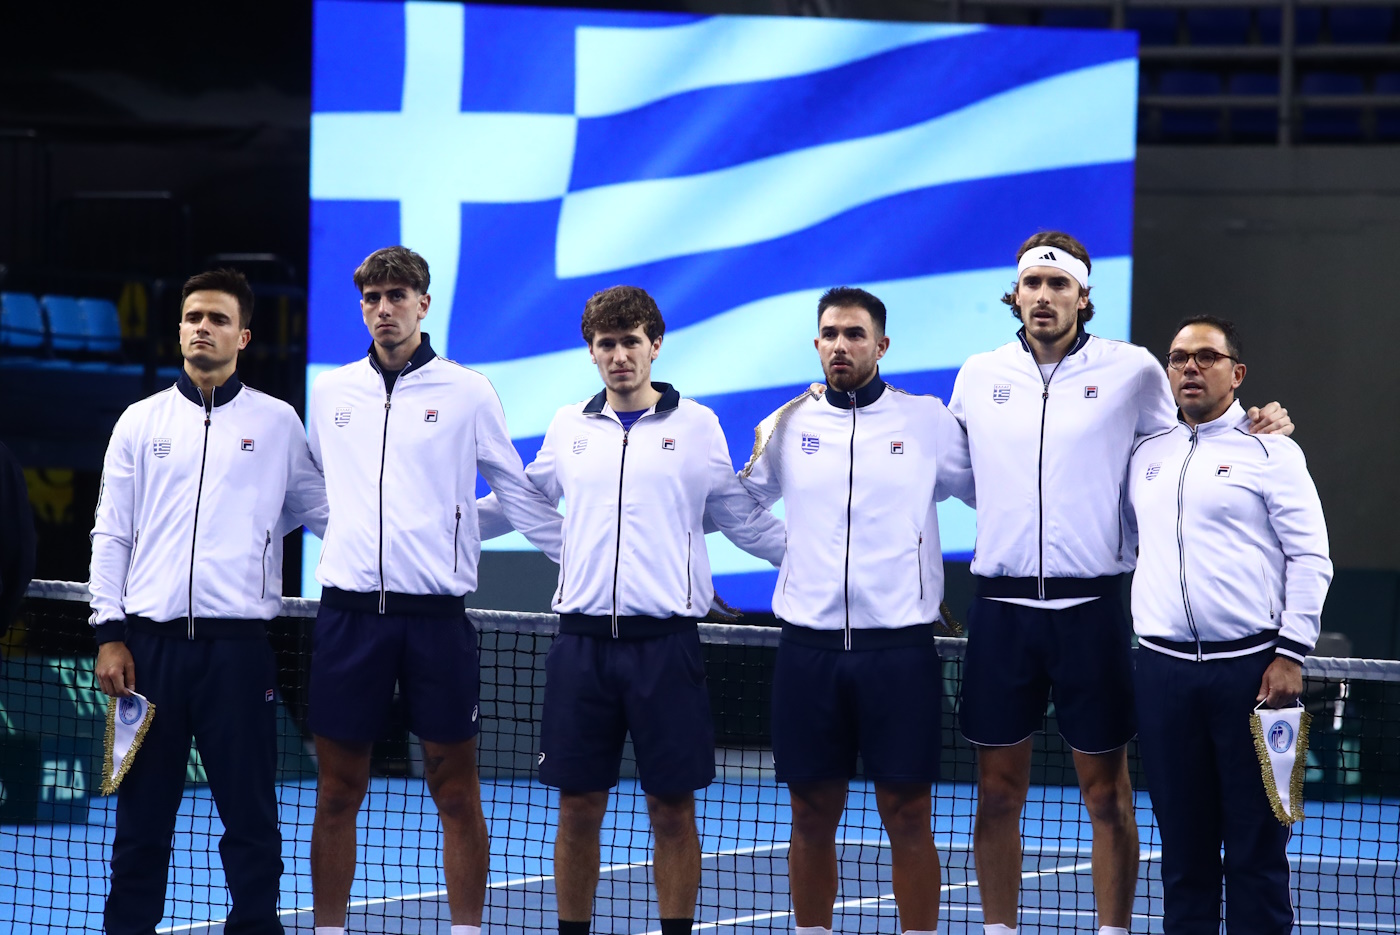 Αριστοτέλης Θάνος – Νίκολας Νταβίντ Ιονέλ 2-1: Πέτυχε μεγάλη ανατροπή και έφερε την Ελλάδα μια νίκη πριν το World Group I στο Davis Cup